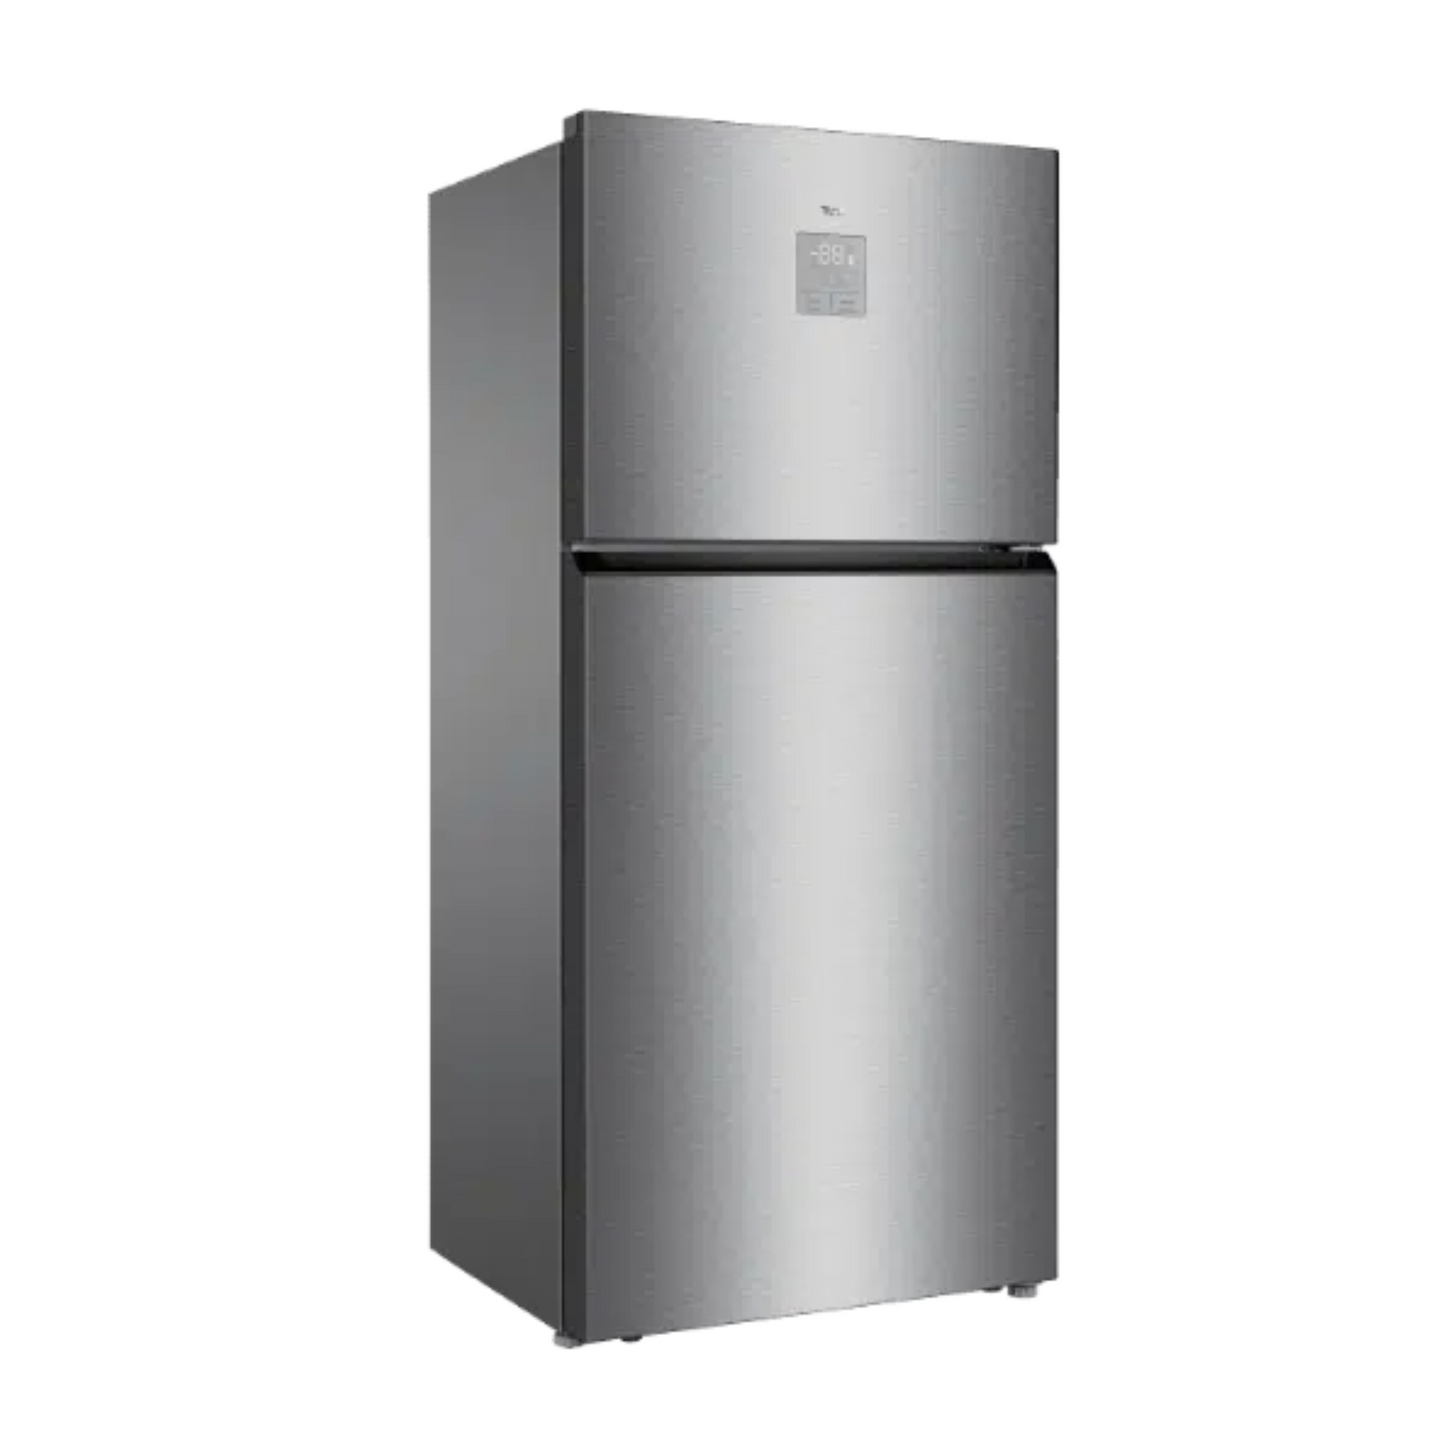 TCL 700L Double Door Refrigerator, P700TMN